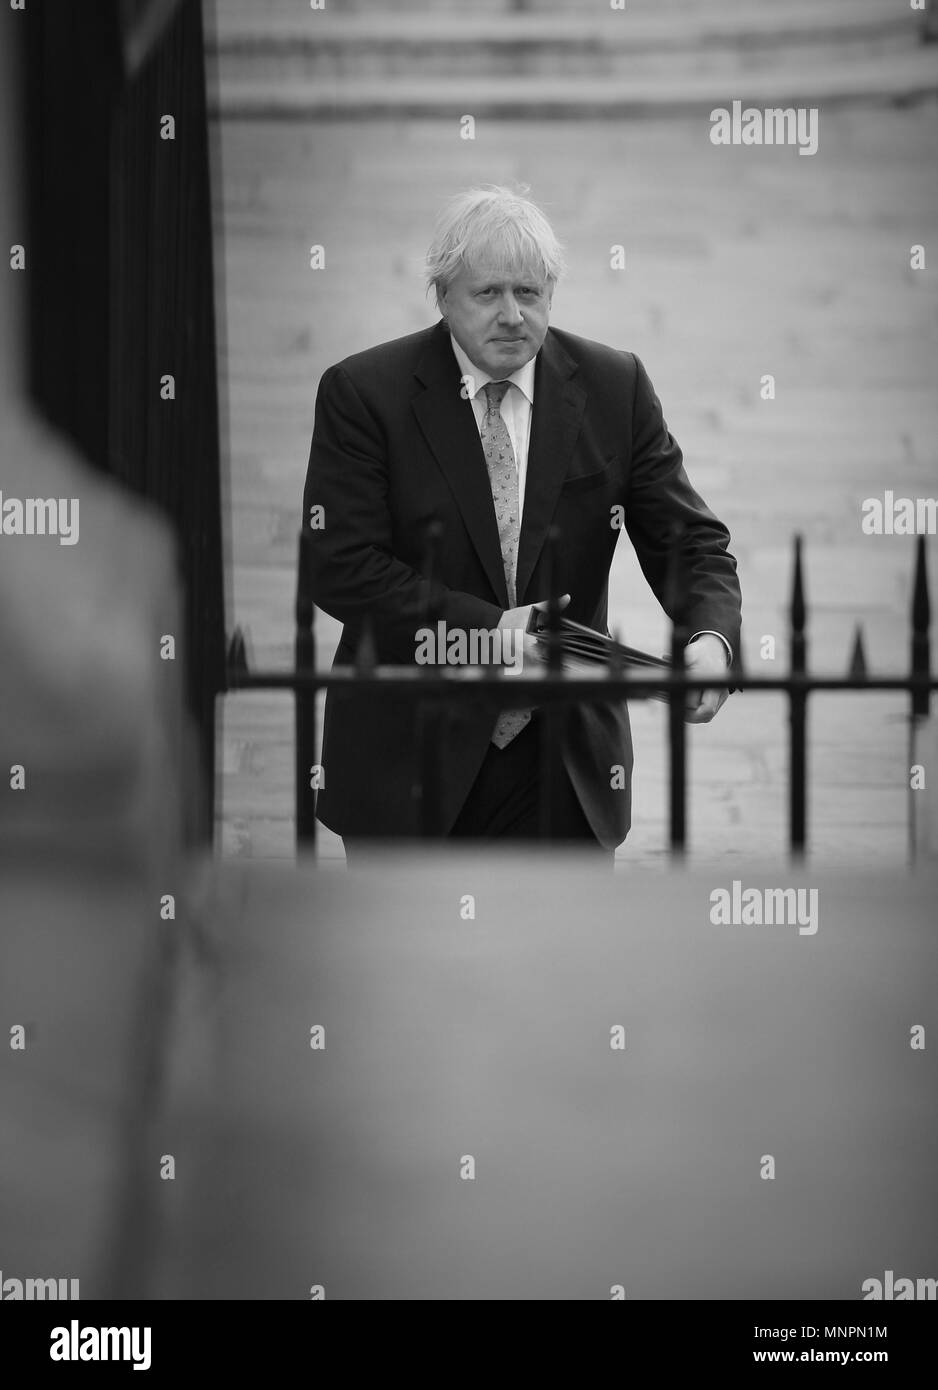 Londra - 15 Maggio 2018: ( Immagine Altered digitalmente a monocromatica ) Boris Johnson il Segretario di Stato per gli Affari Esteri visto arrving a Downing street Foto Stock